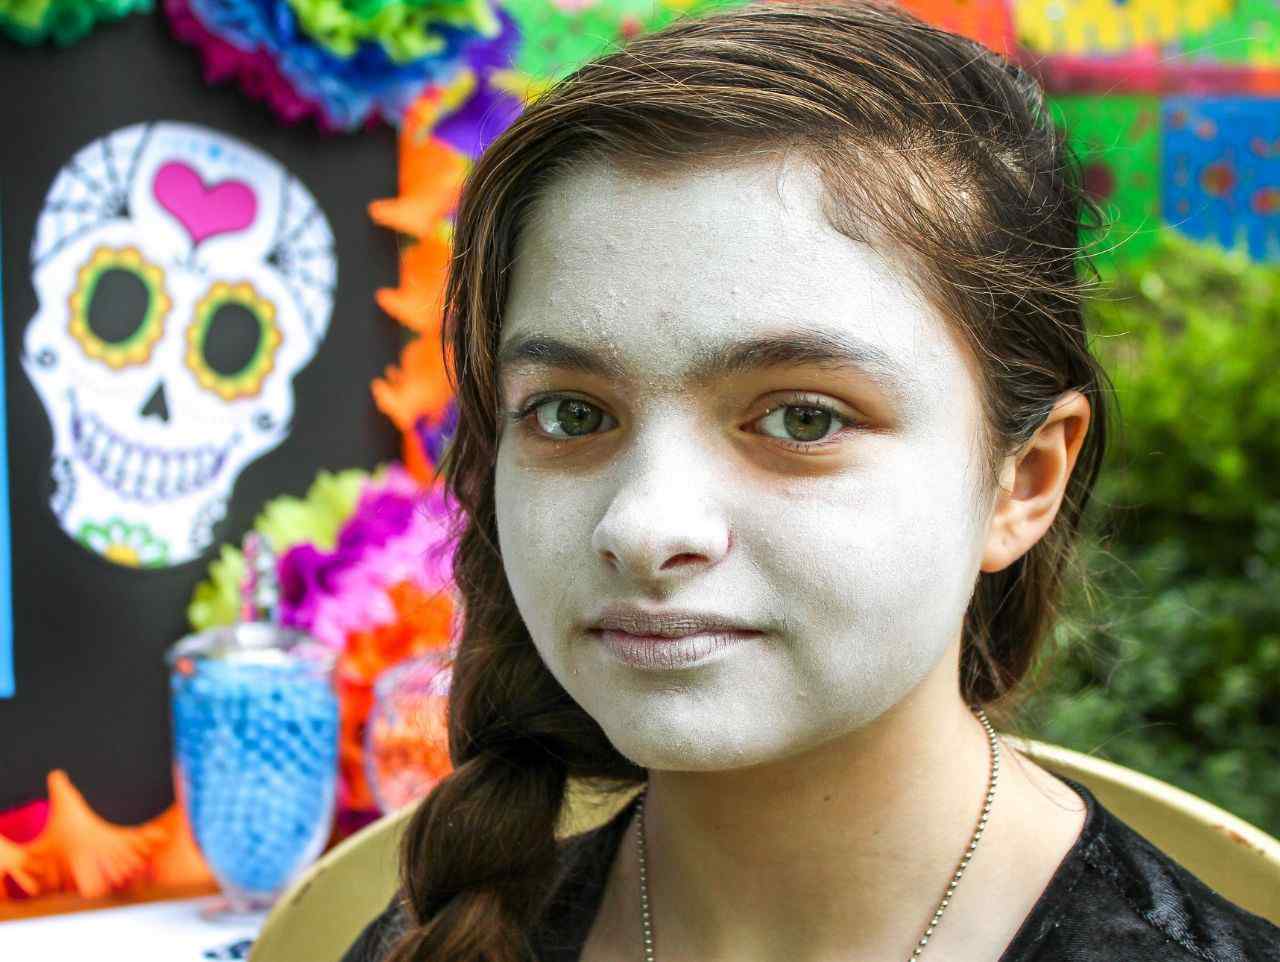 Sugar Skull Anleitung für Halloween Make-up für Mädchen Schritt 1 weiße Farbe auf das Gesicht auftragen